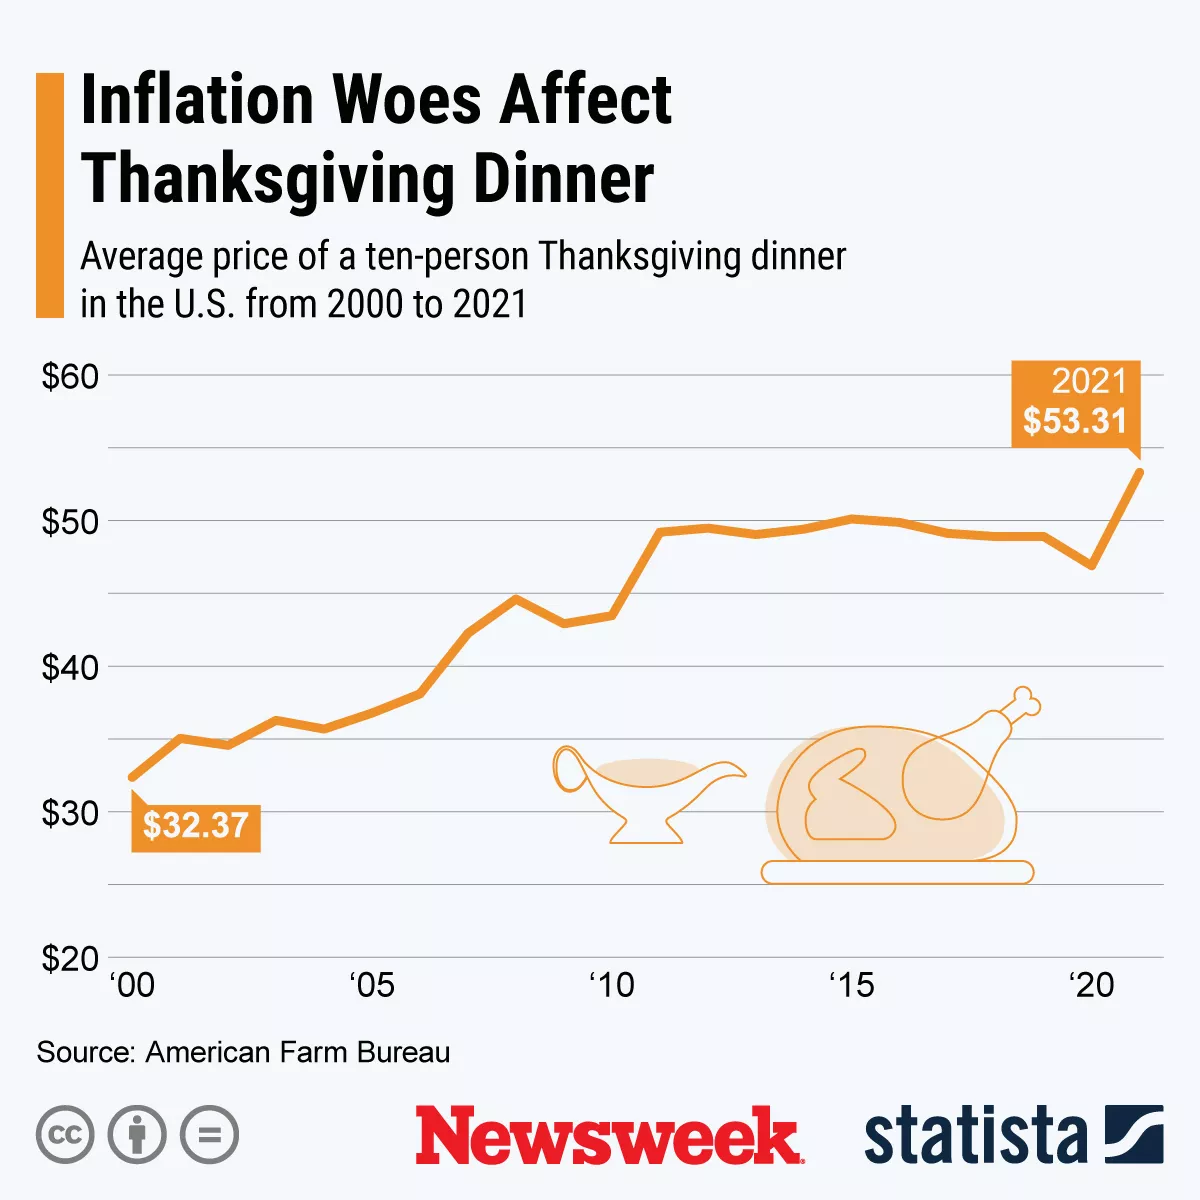 Grafik mit Inflationsauswirkungen auf Thanksgiving.